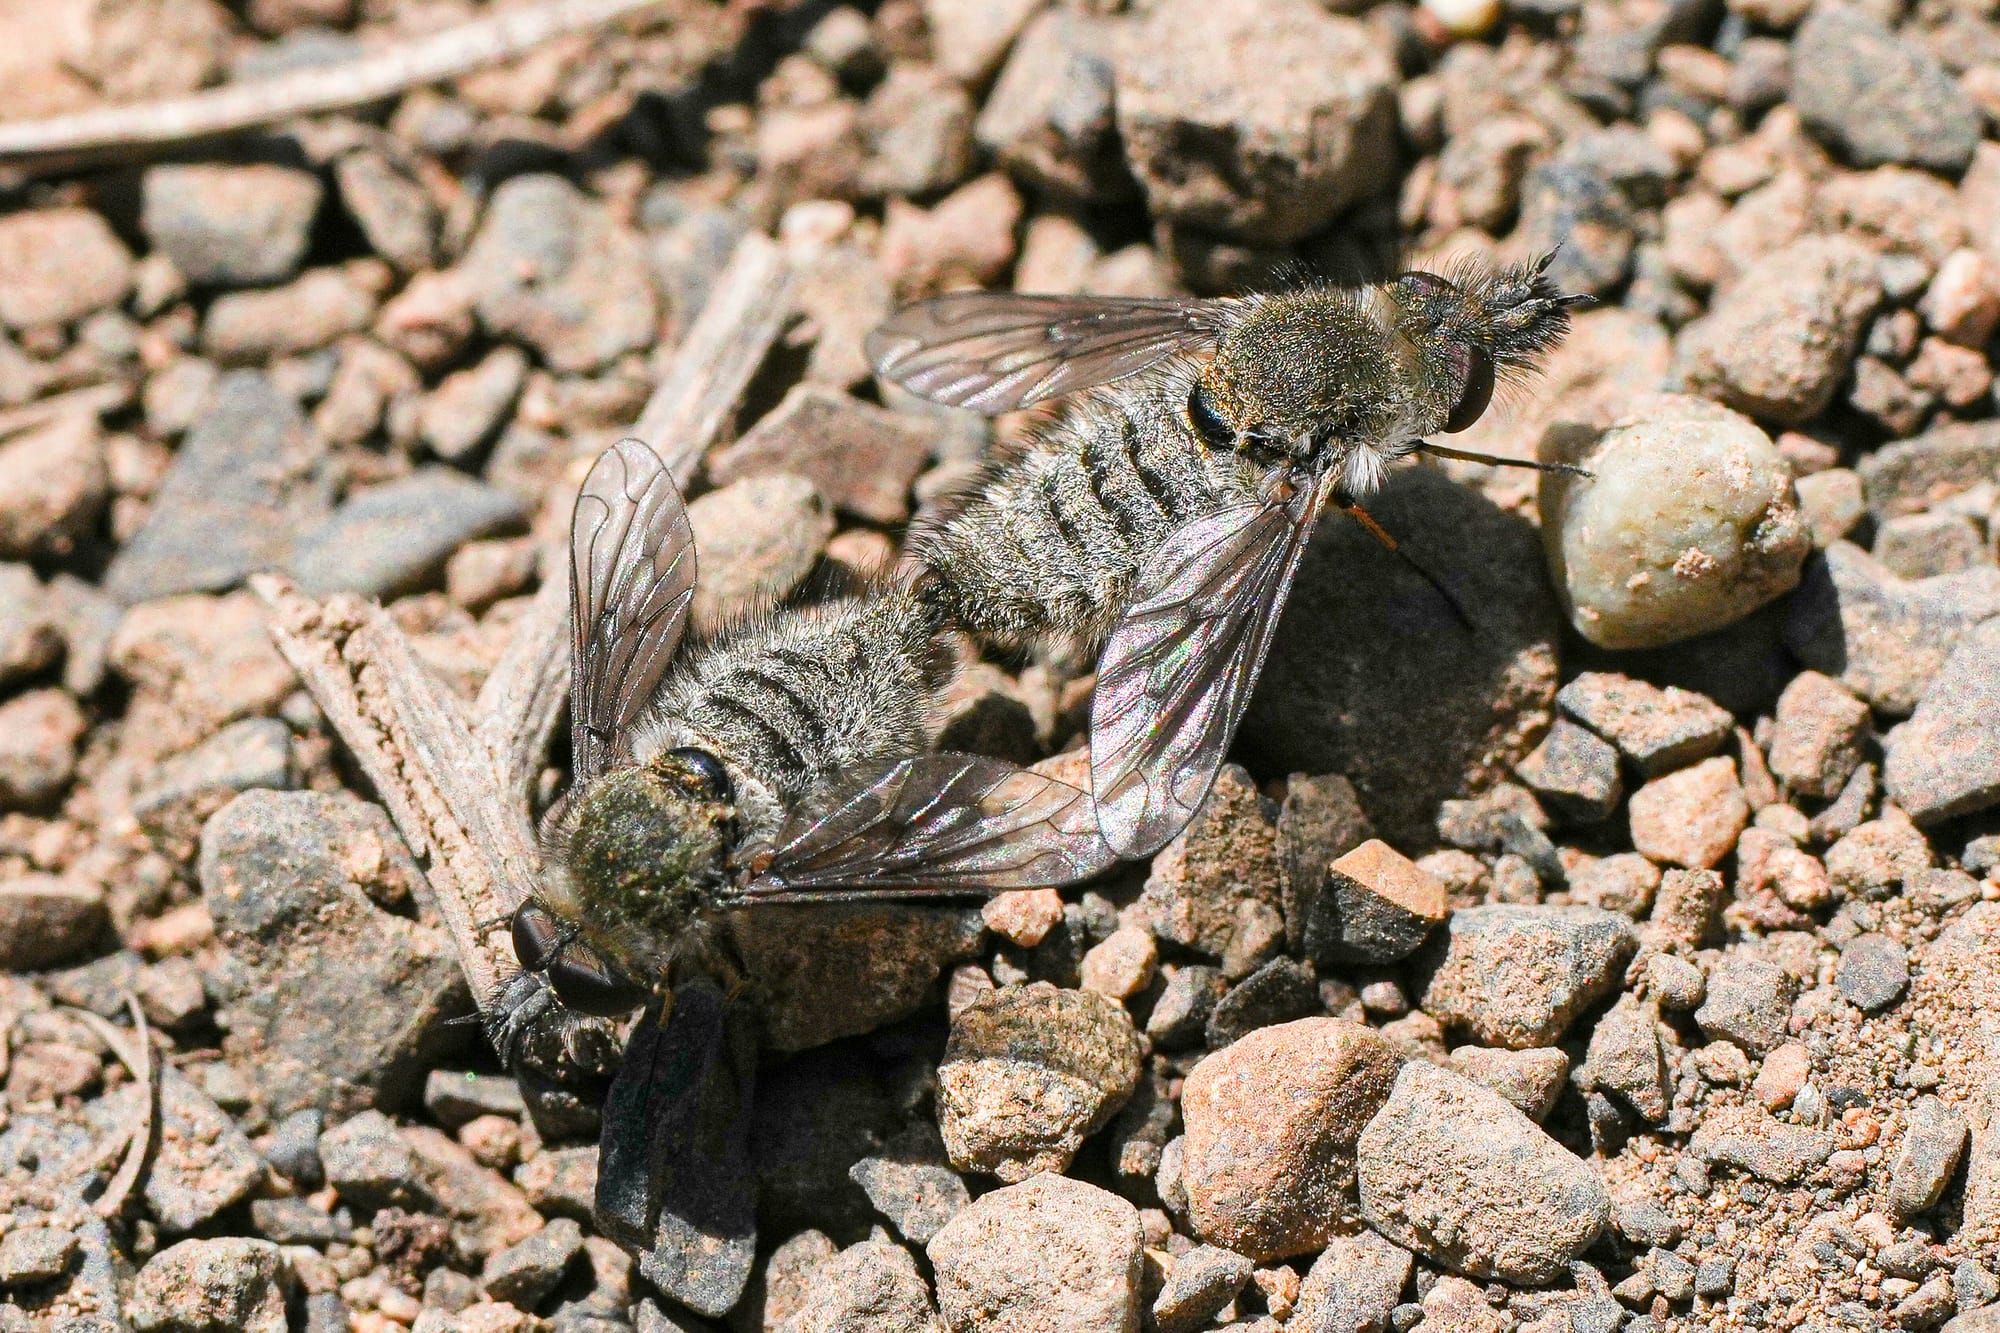 mating flies